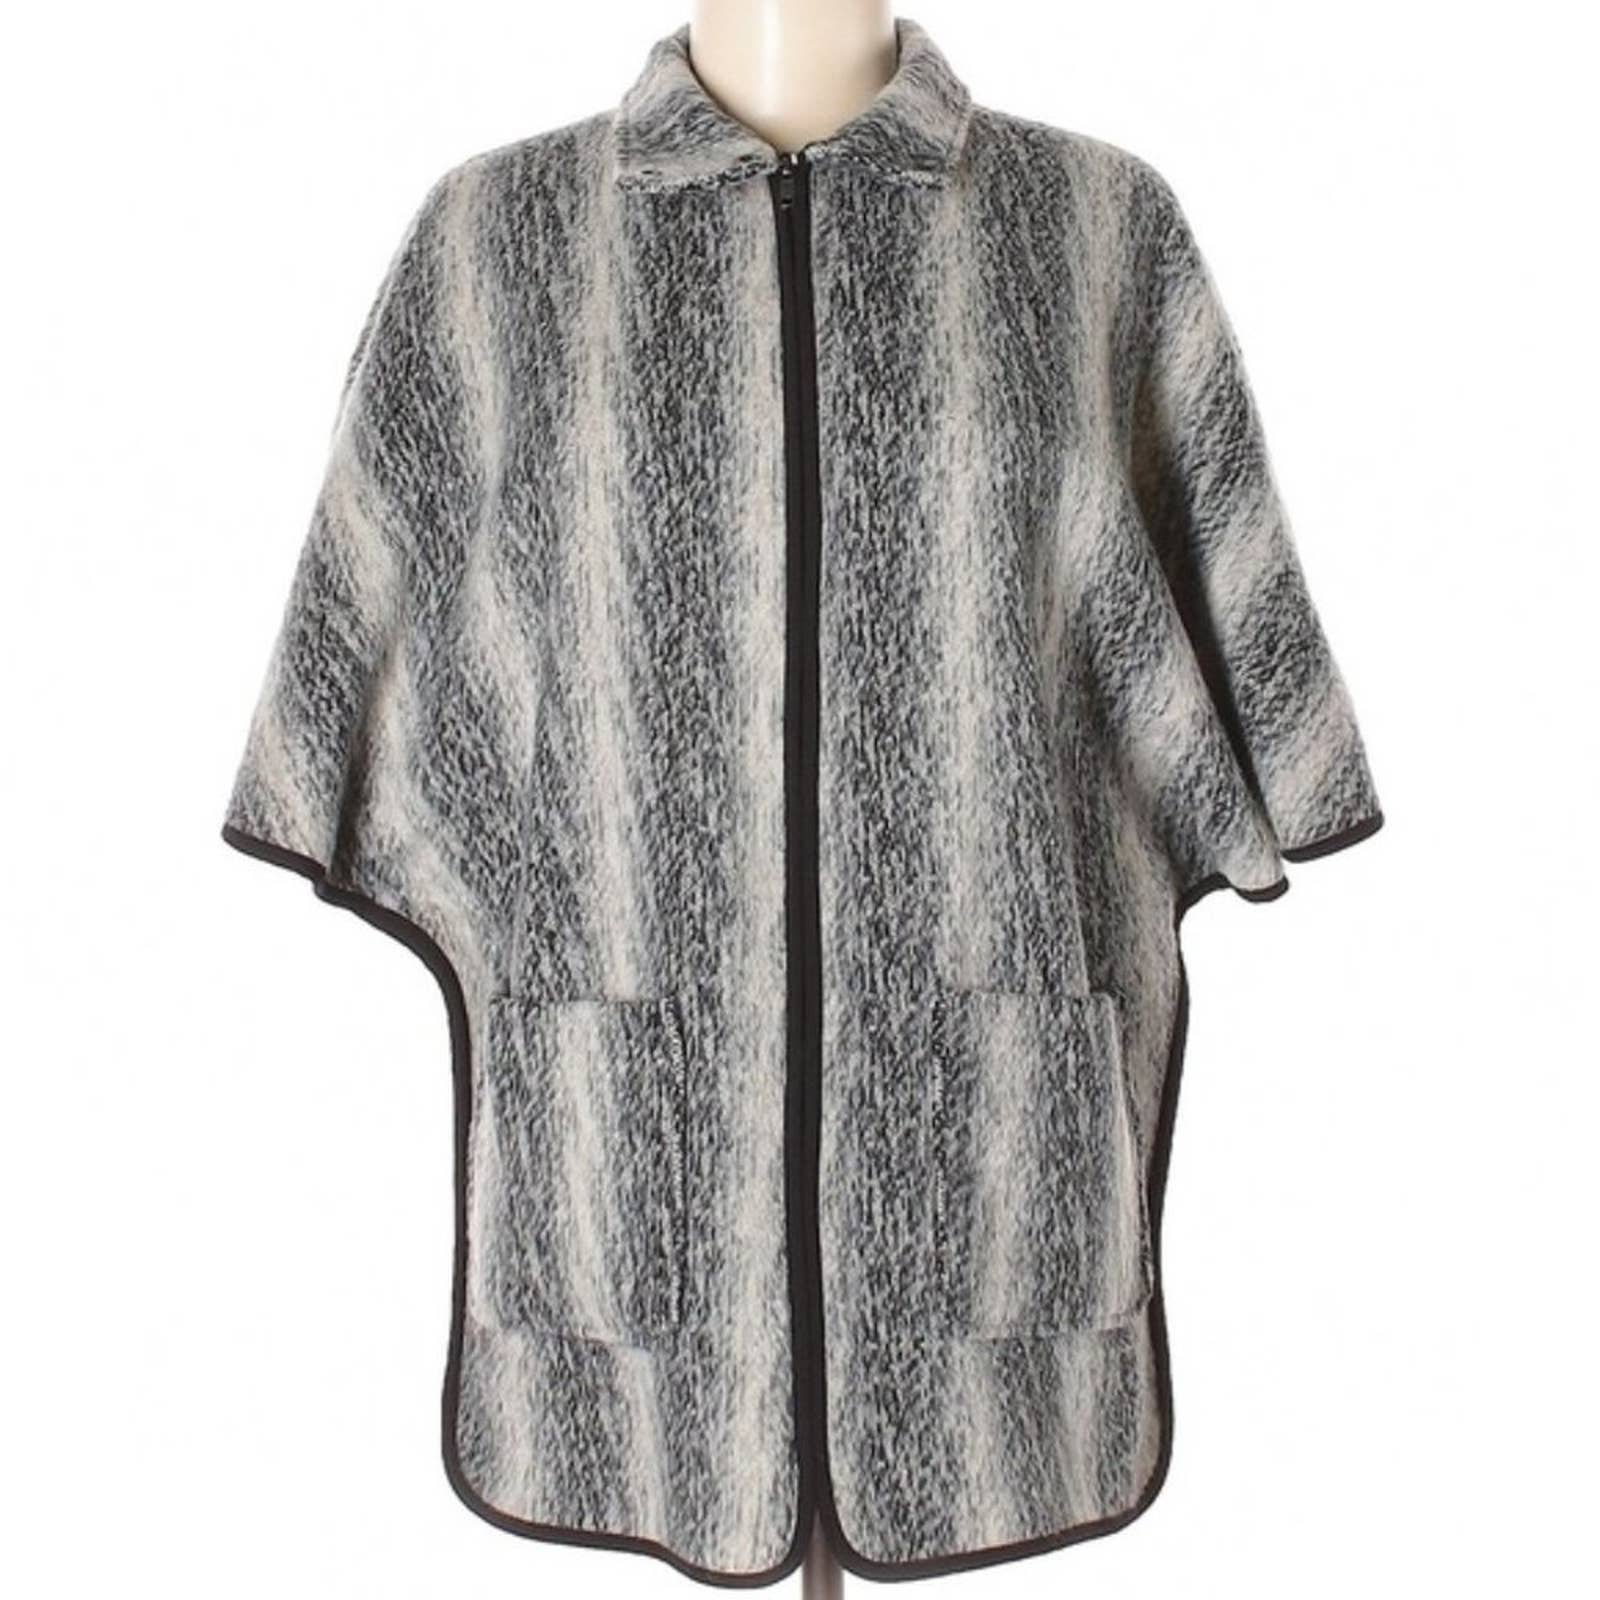 Fashion Anthropologie Ro & De cozy warm gray & tan zip up striped XS poncho LYL1MLBb5 Factory Price